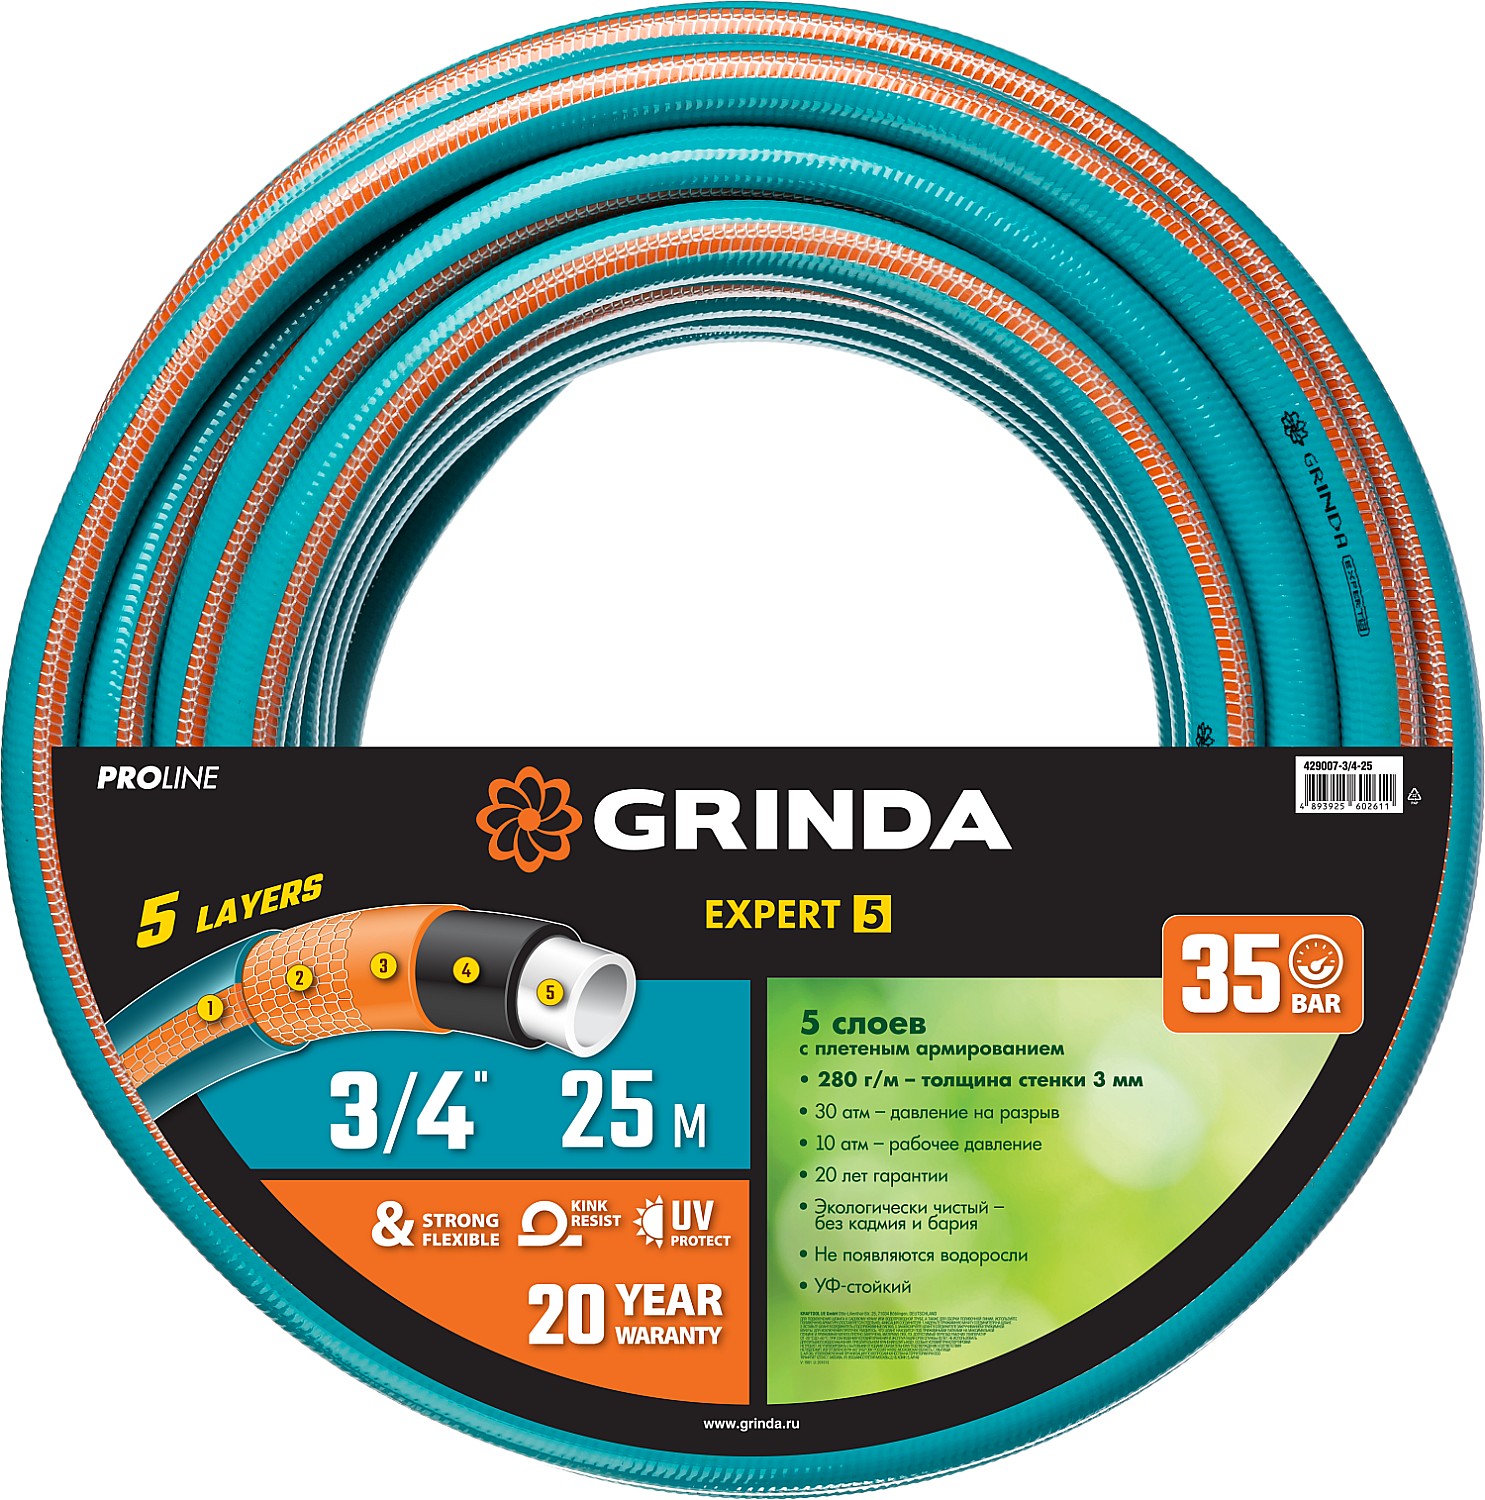 Шланг для полива Grinda Proline expert 429007-3/4-25 3/4 25 м - купить в Москве, цены на Мегамаркет